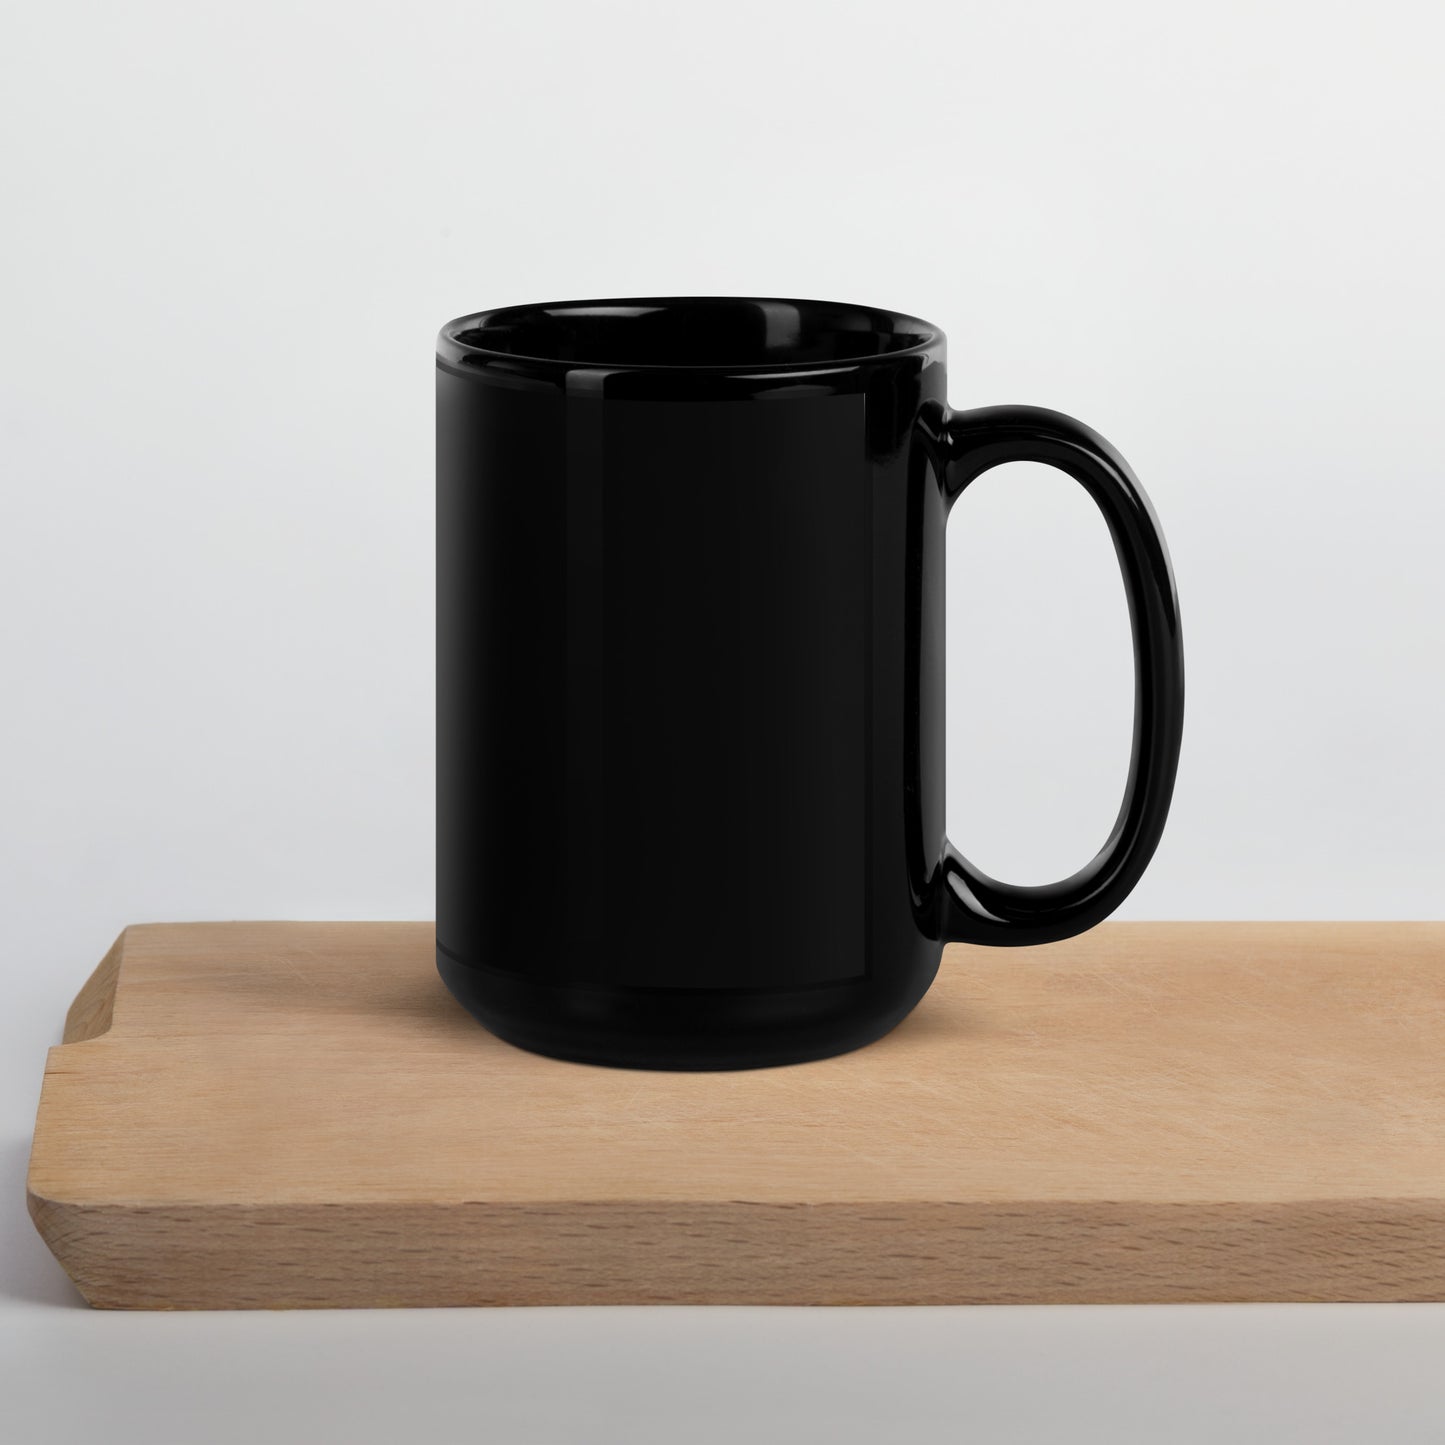 Black Glossy Mug - LOVE emblem